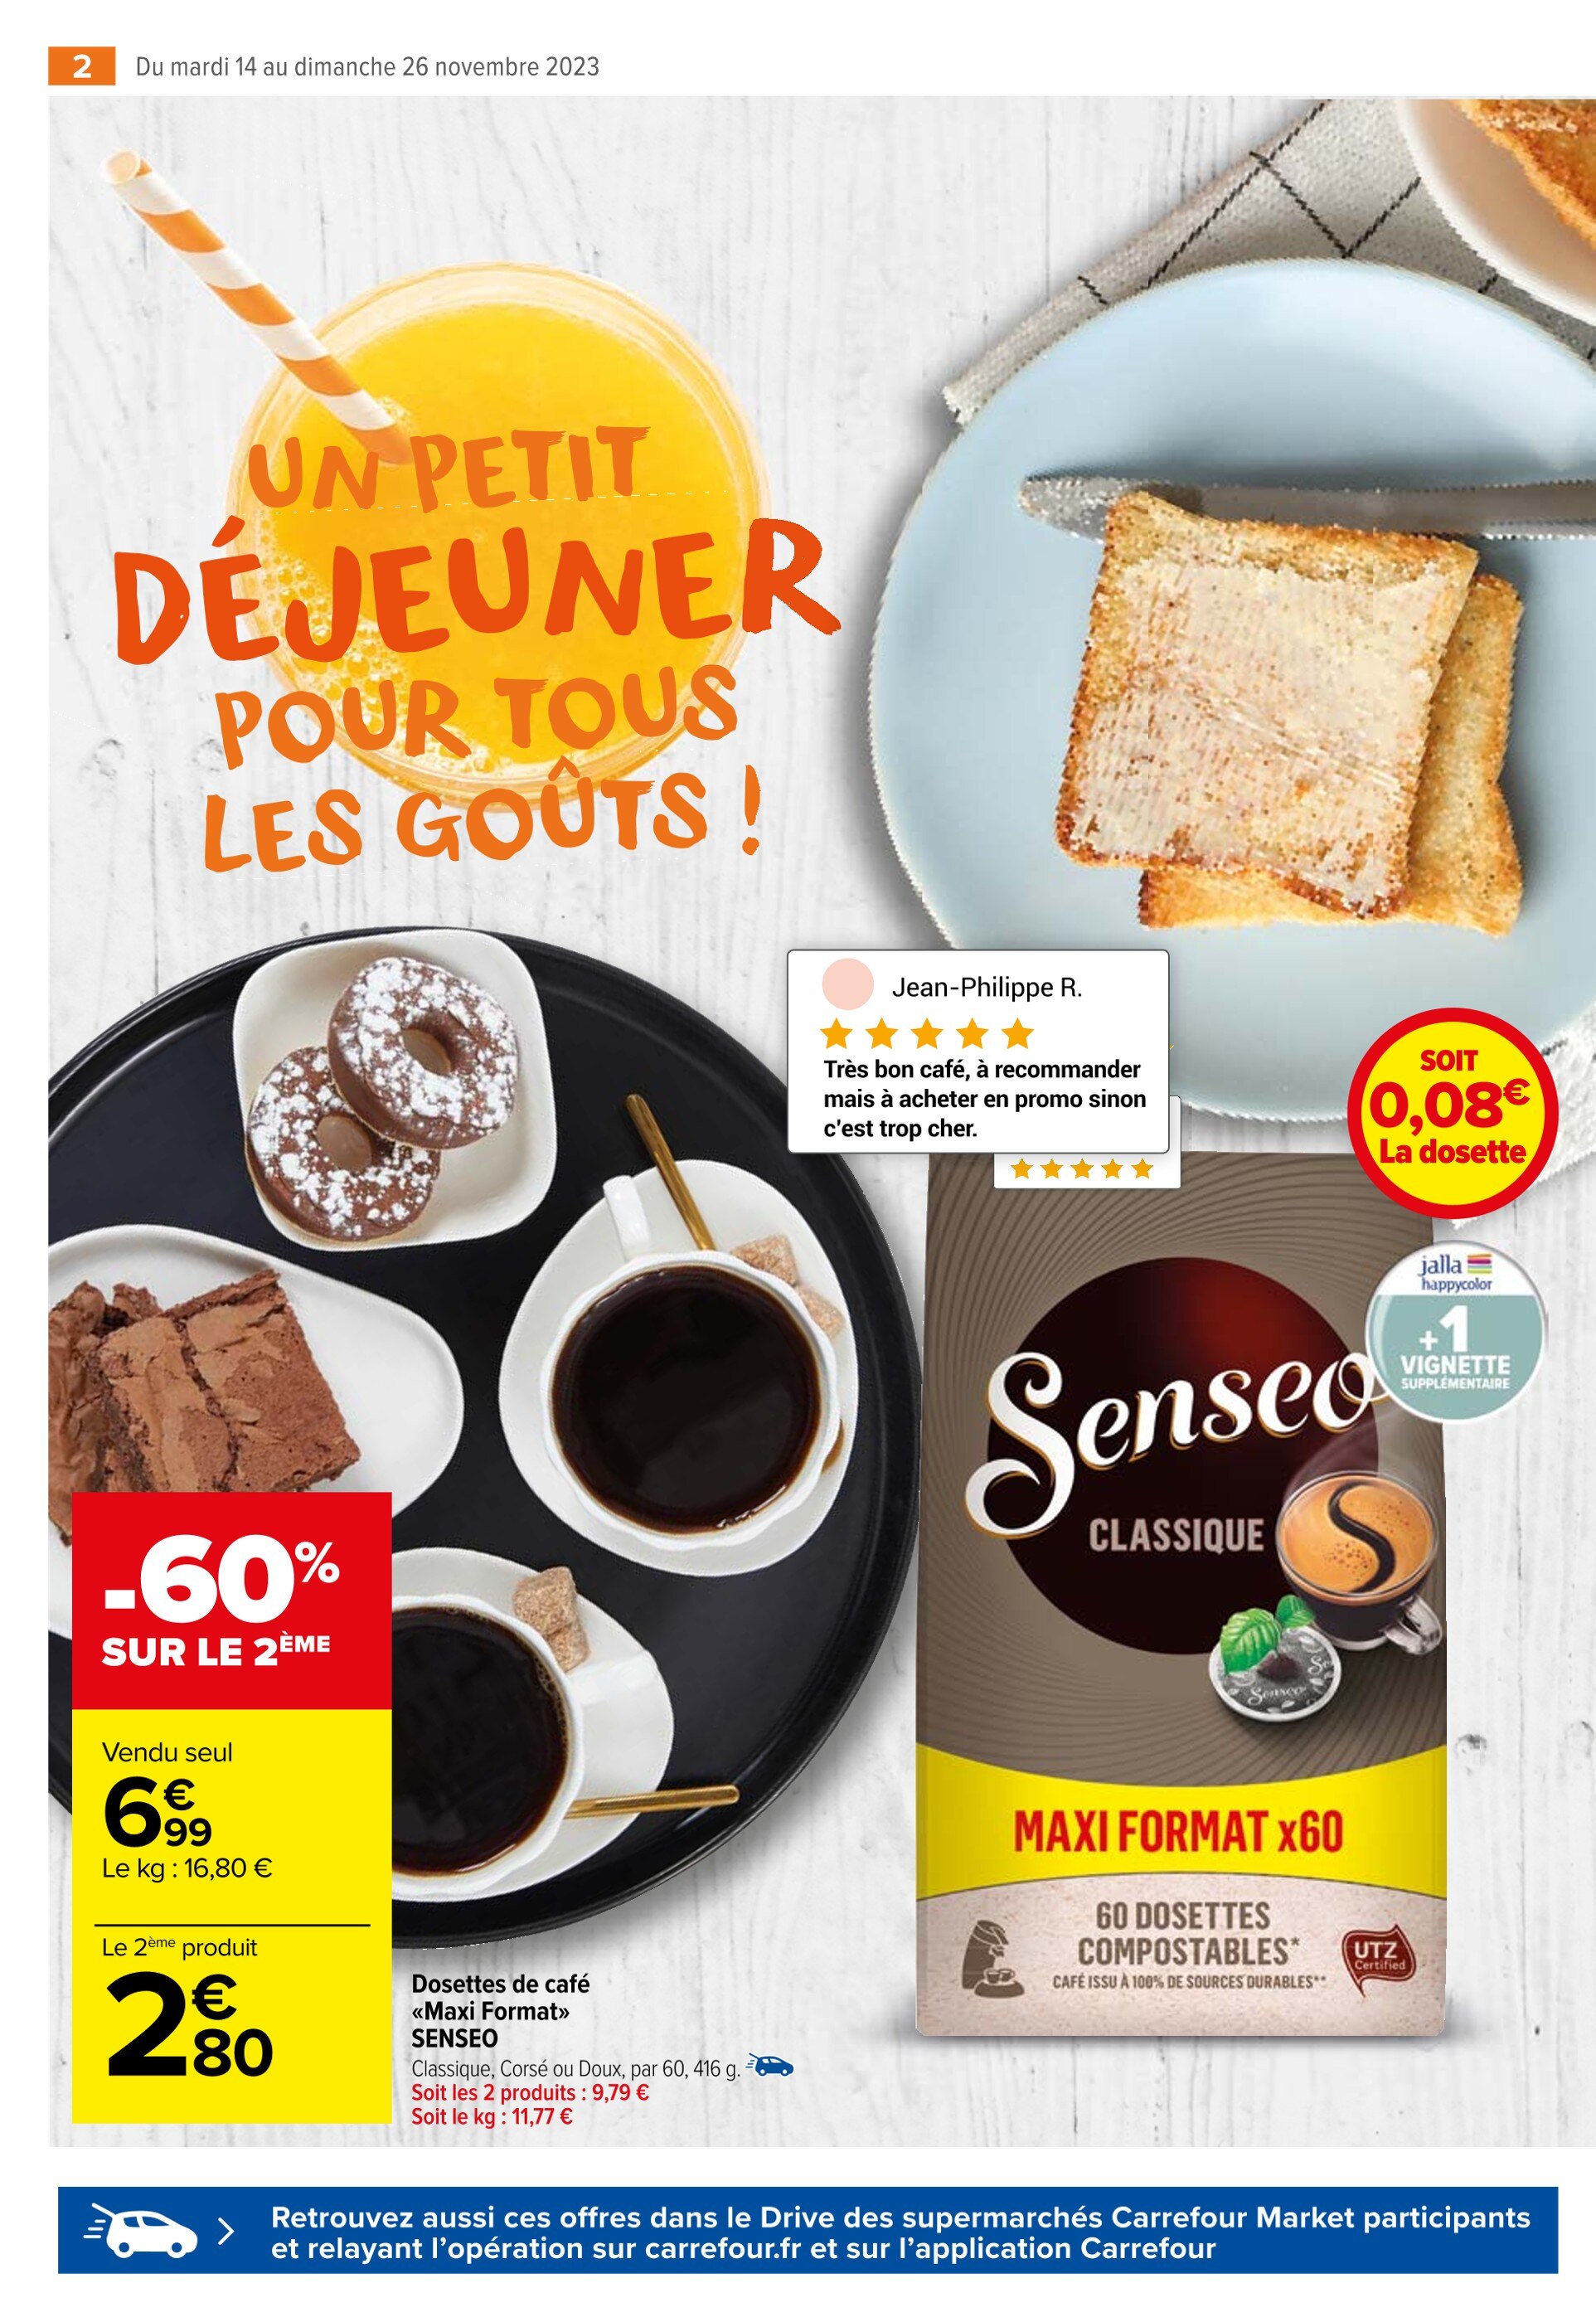 Senseo Carrefour ᐅ Promos et prix dans le catalogue de la semaine